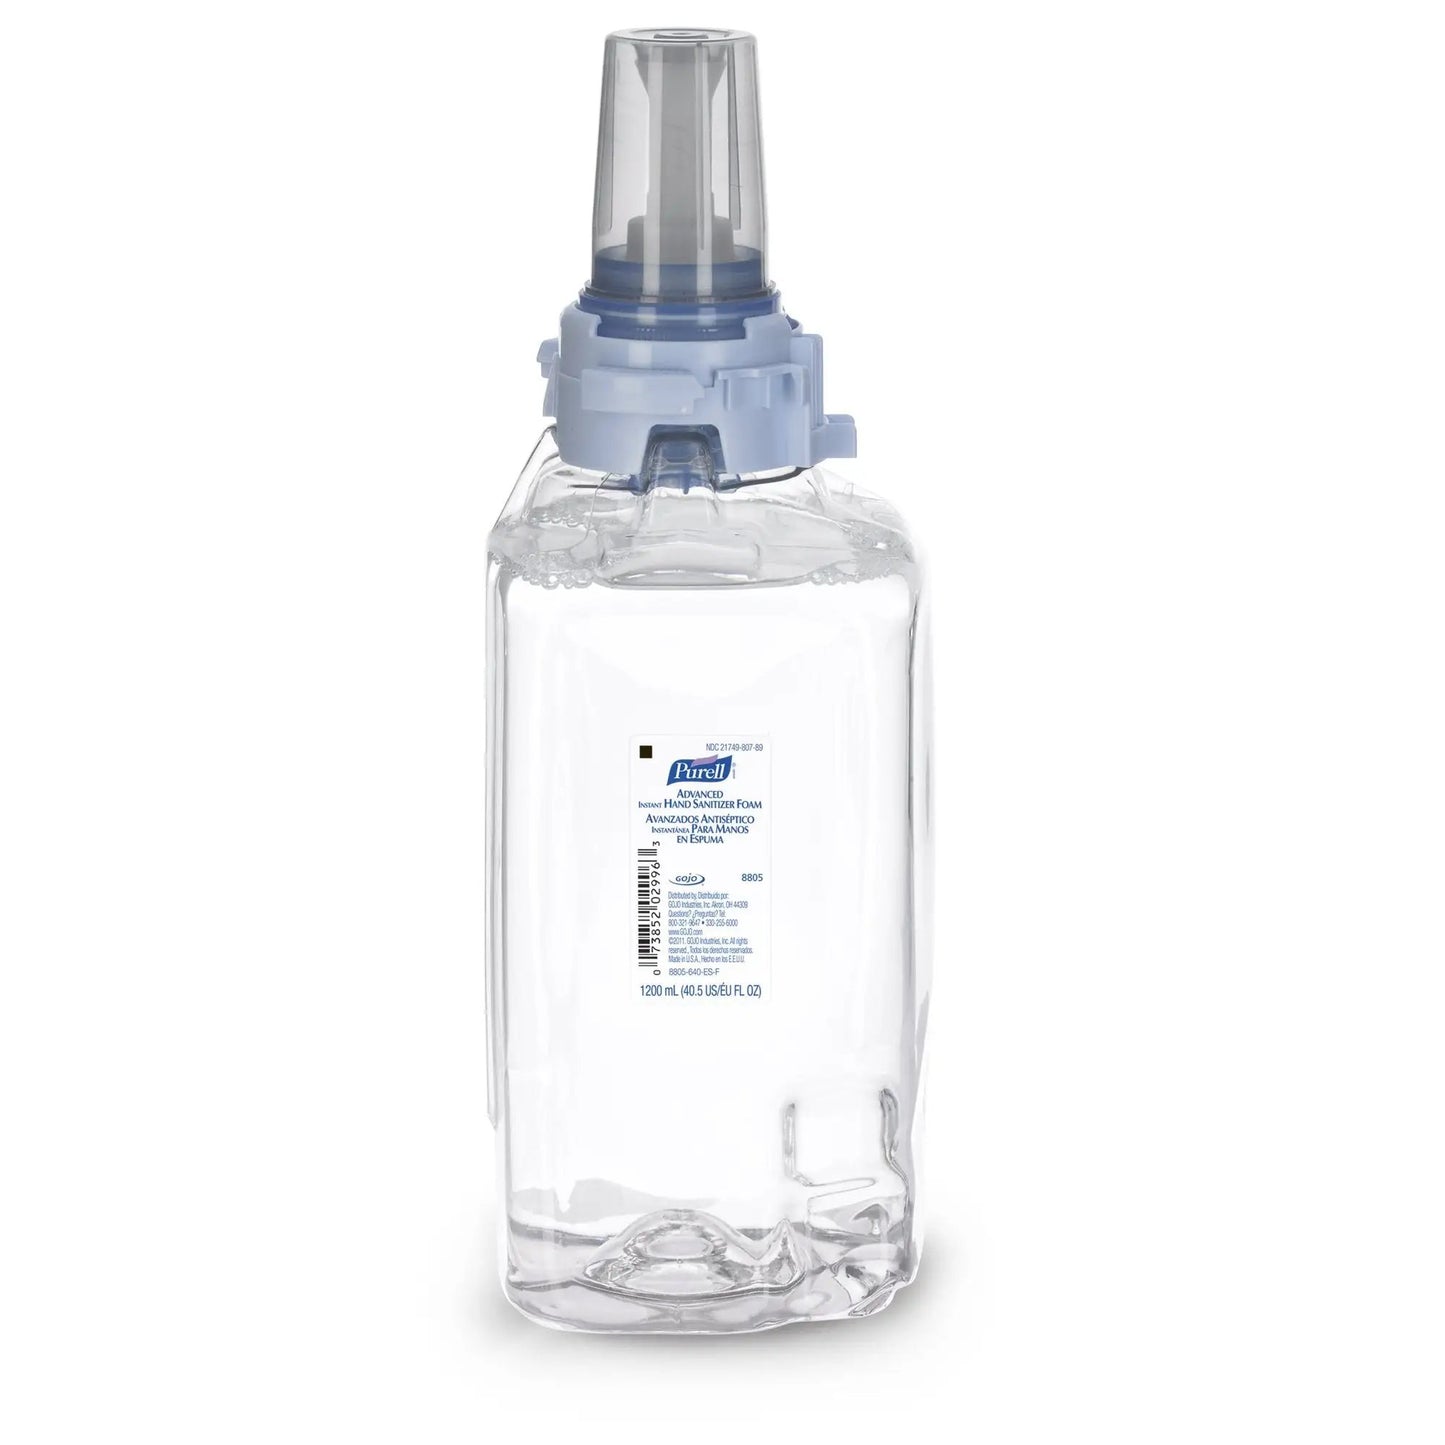 Purell Advanced Foaming Hand Sanitizer 1200 mL Dispenser Refill Bottle